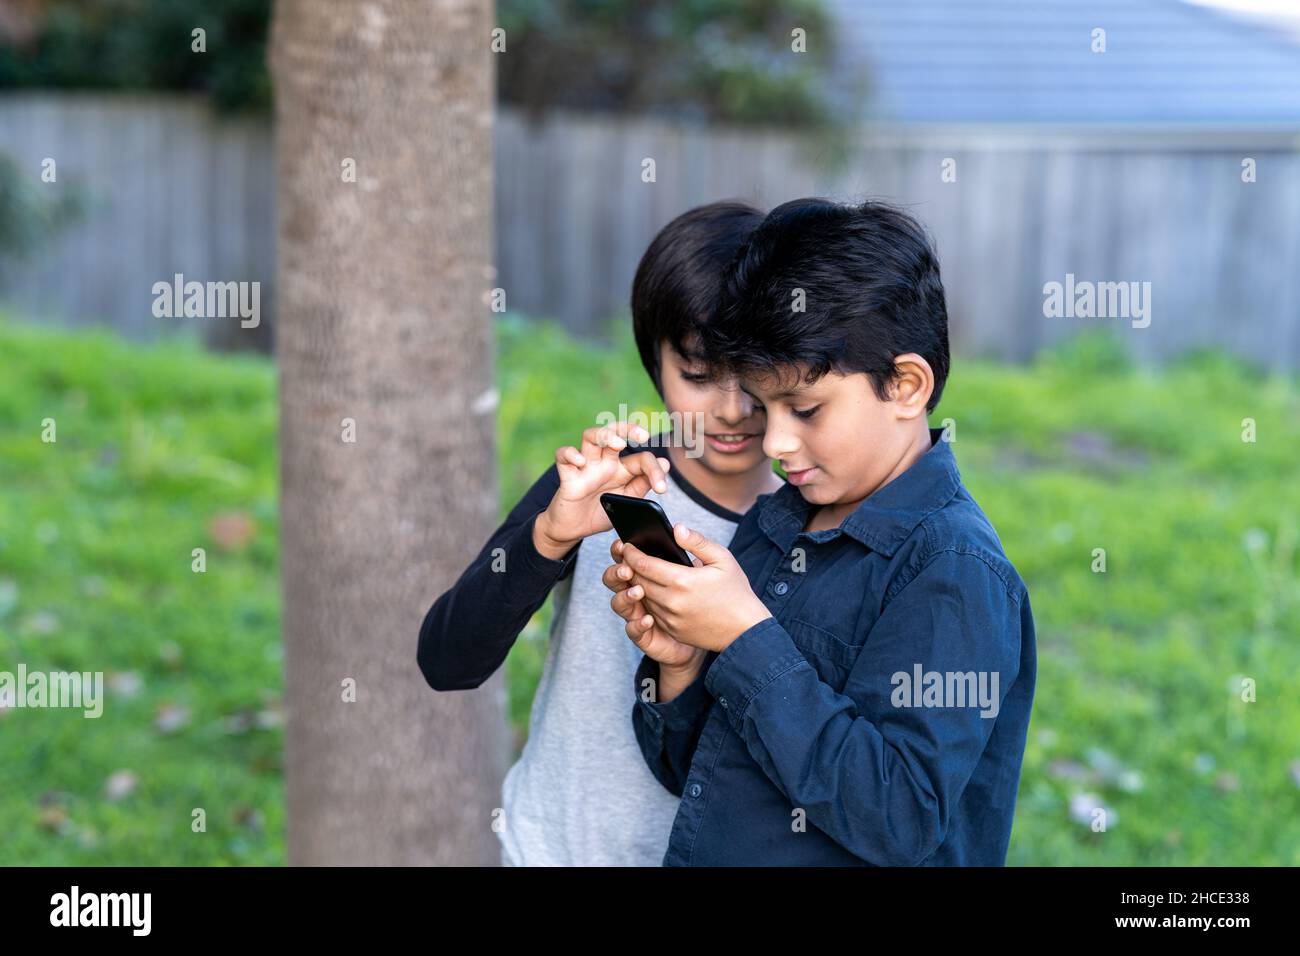 Zwei kleine Kinder, die ein Mobiltelefon benutzen. Neugierige Kinder, die auf das Mobiltelefon schauen. Stockfoto